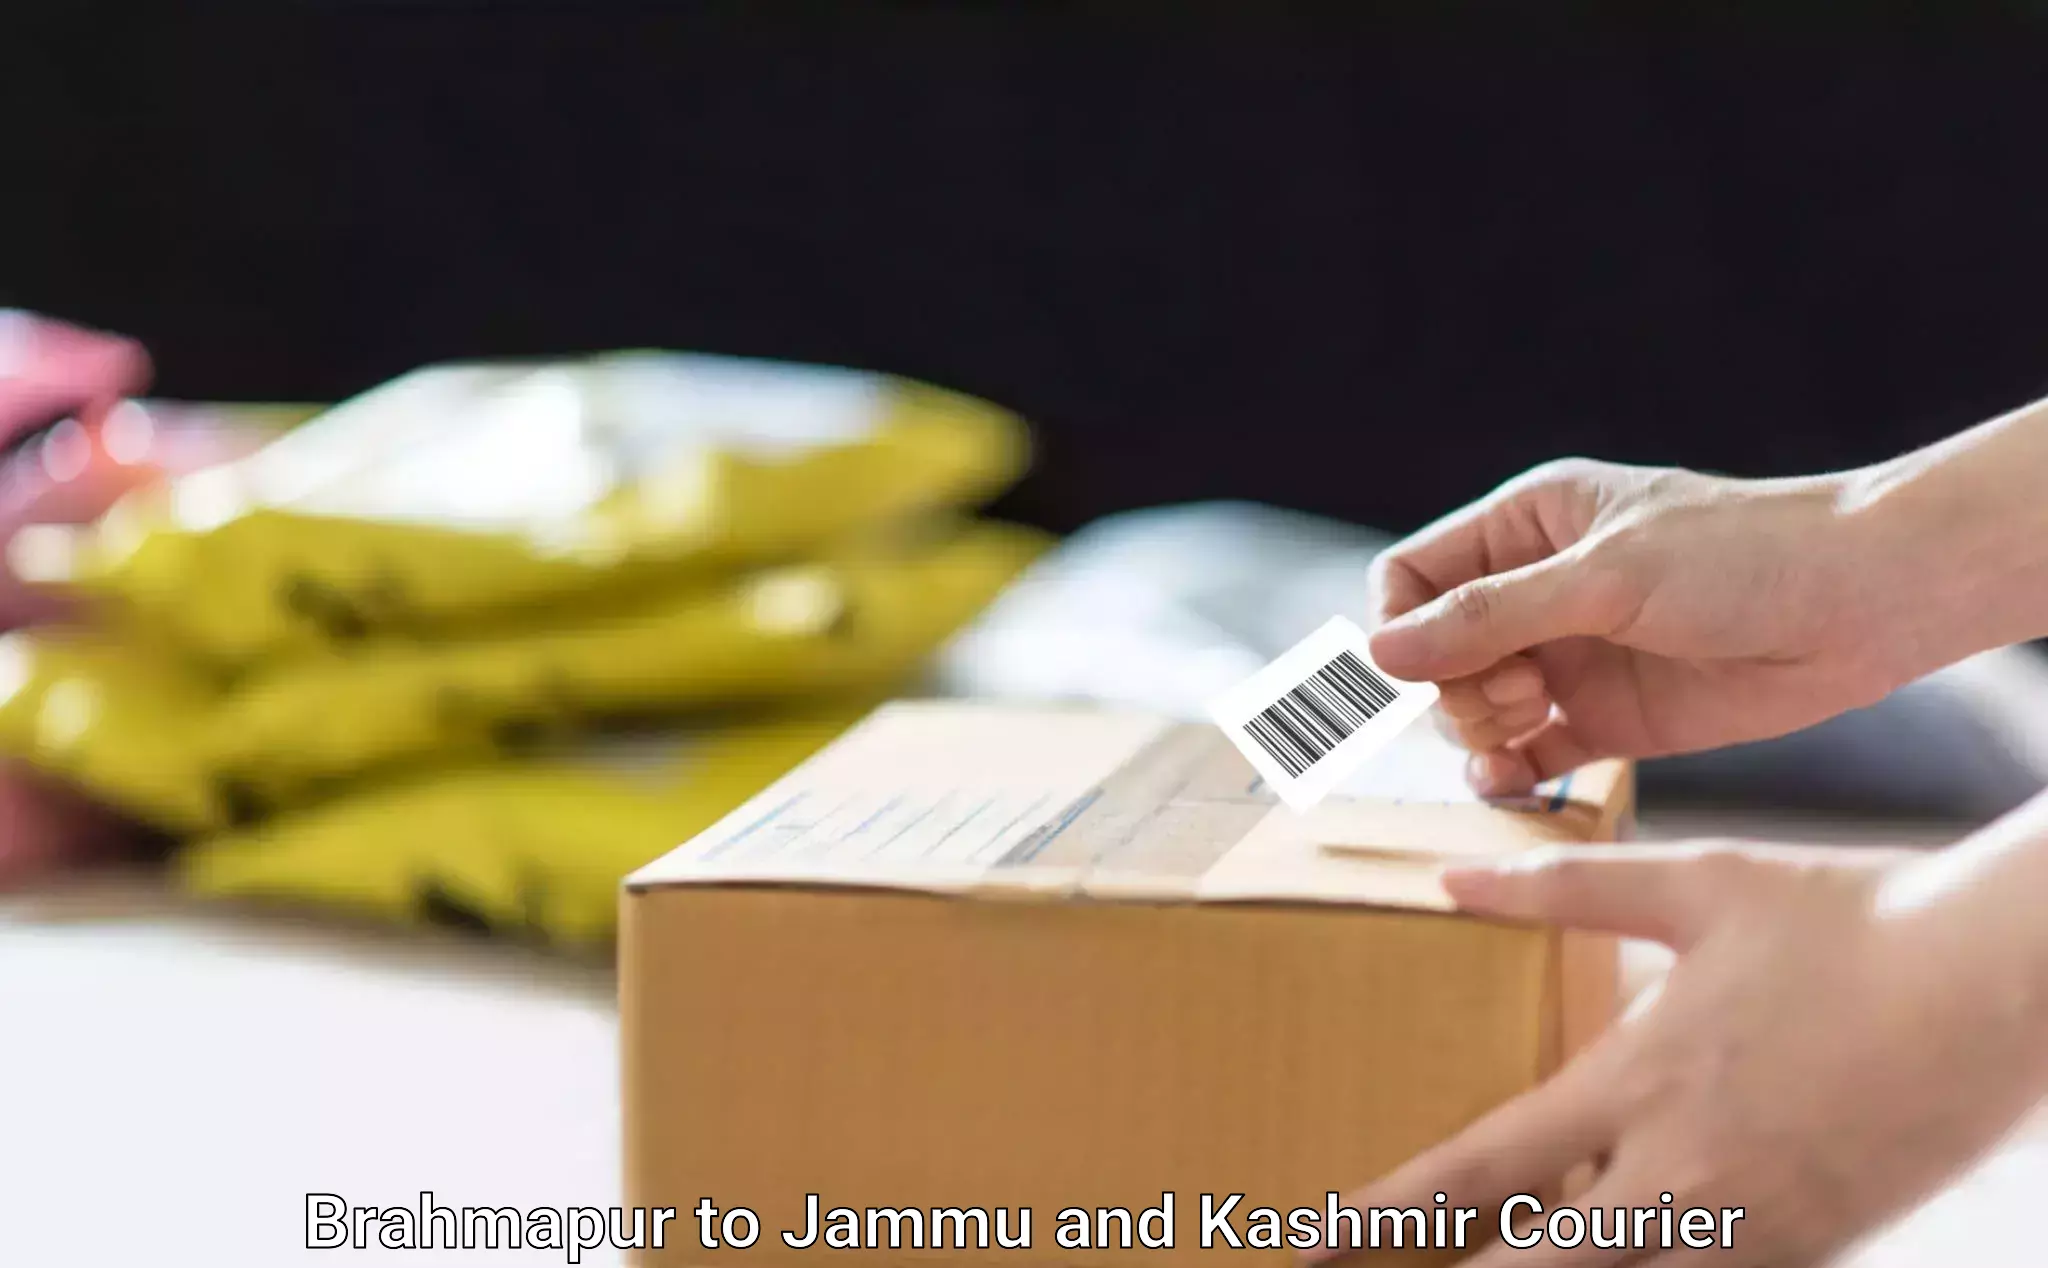 Home furniture shifting Brahmapur to Srinagar Kashmir